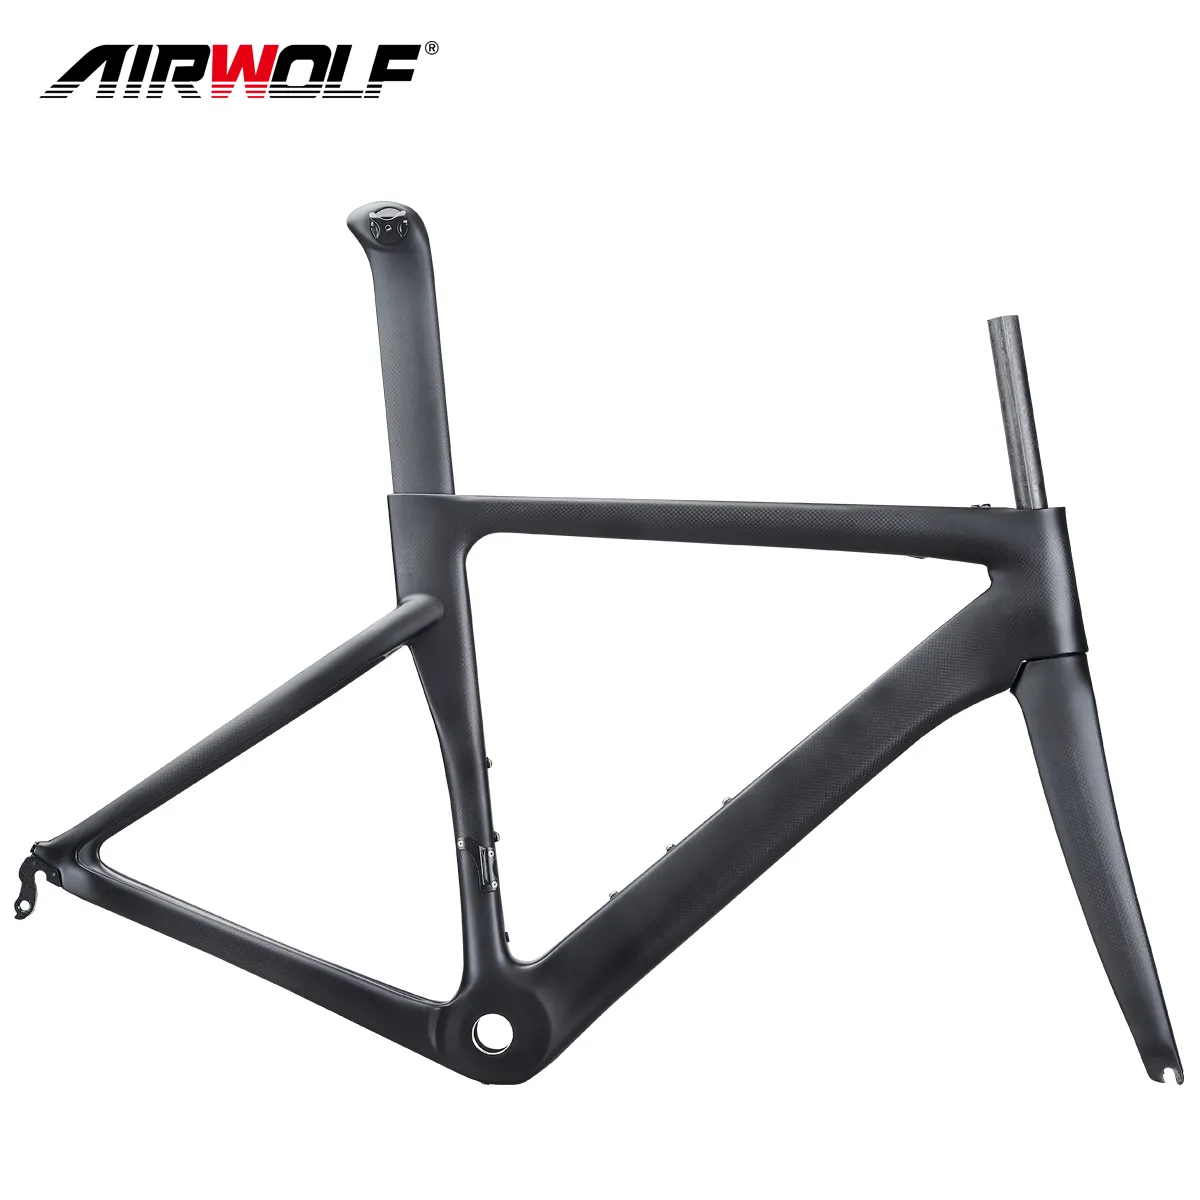 Airwolf-Cuadro de carbono para bicicleta de carretera, Di2, Marco mecánico, tamaño de 48/51/54/56cm